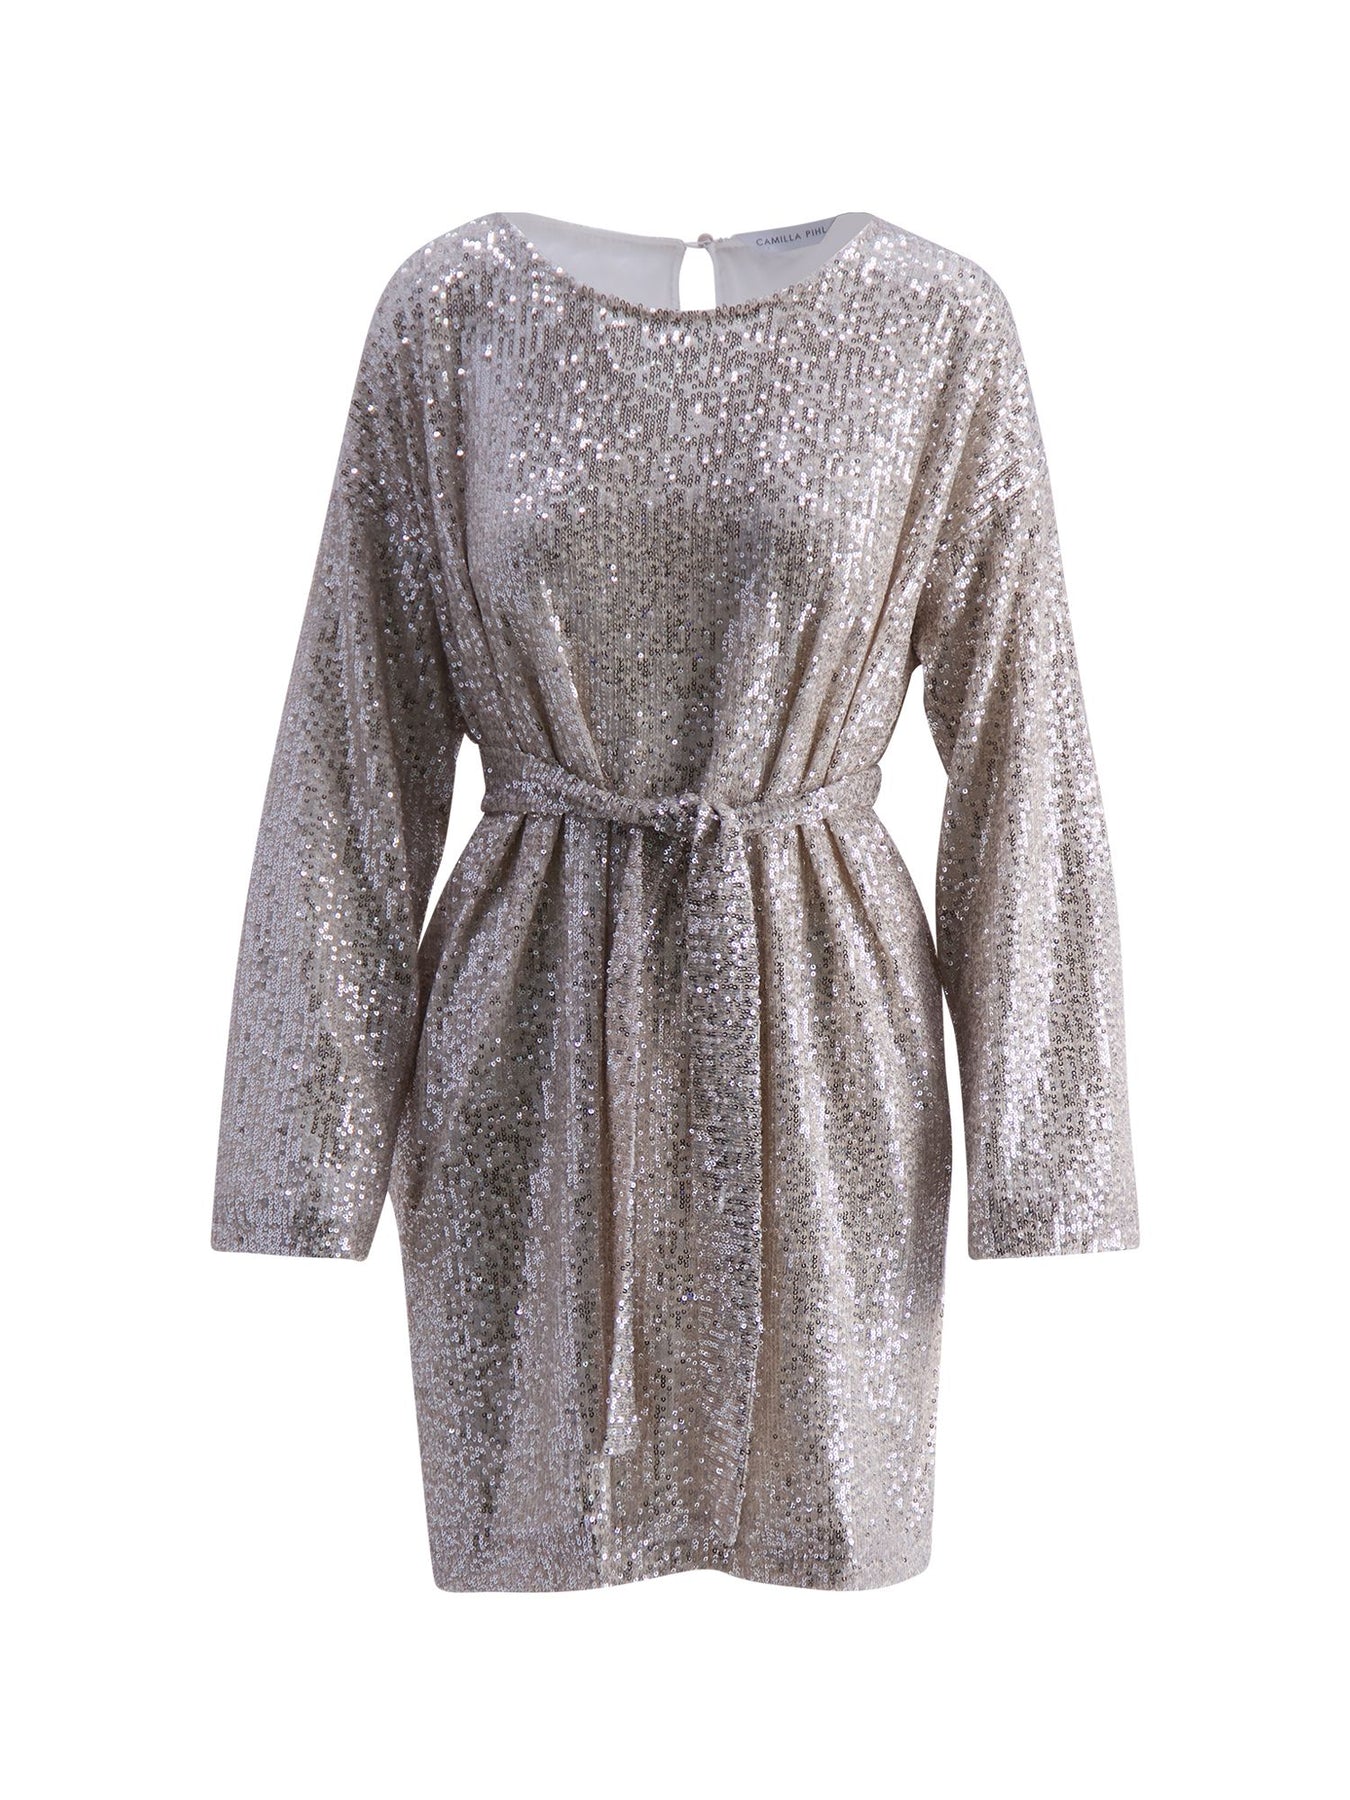 Cora Sequin Dress - Silver - Camilla Pihl - Kjoler - VILLOID.no